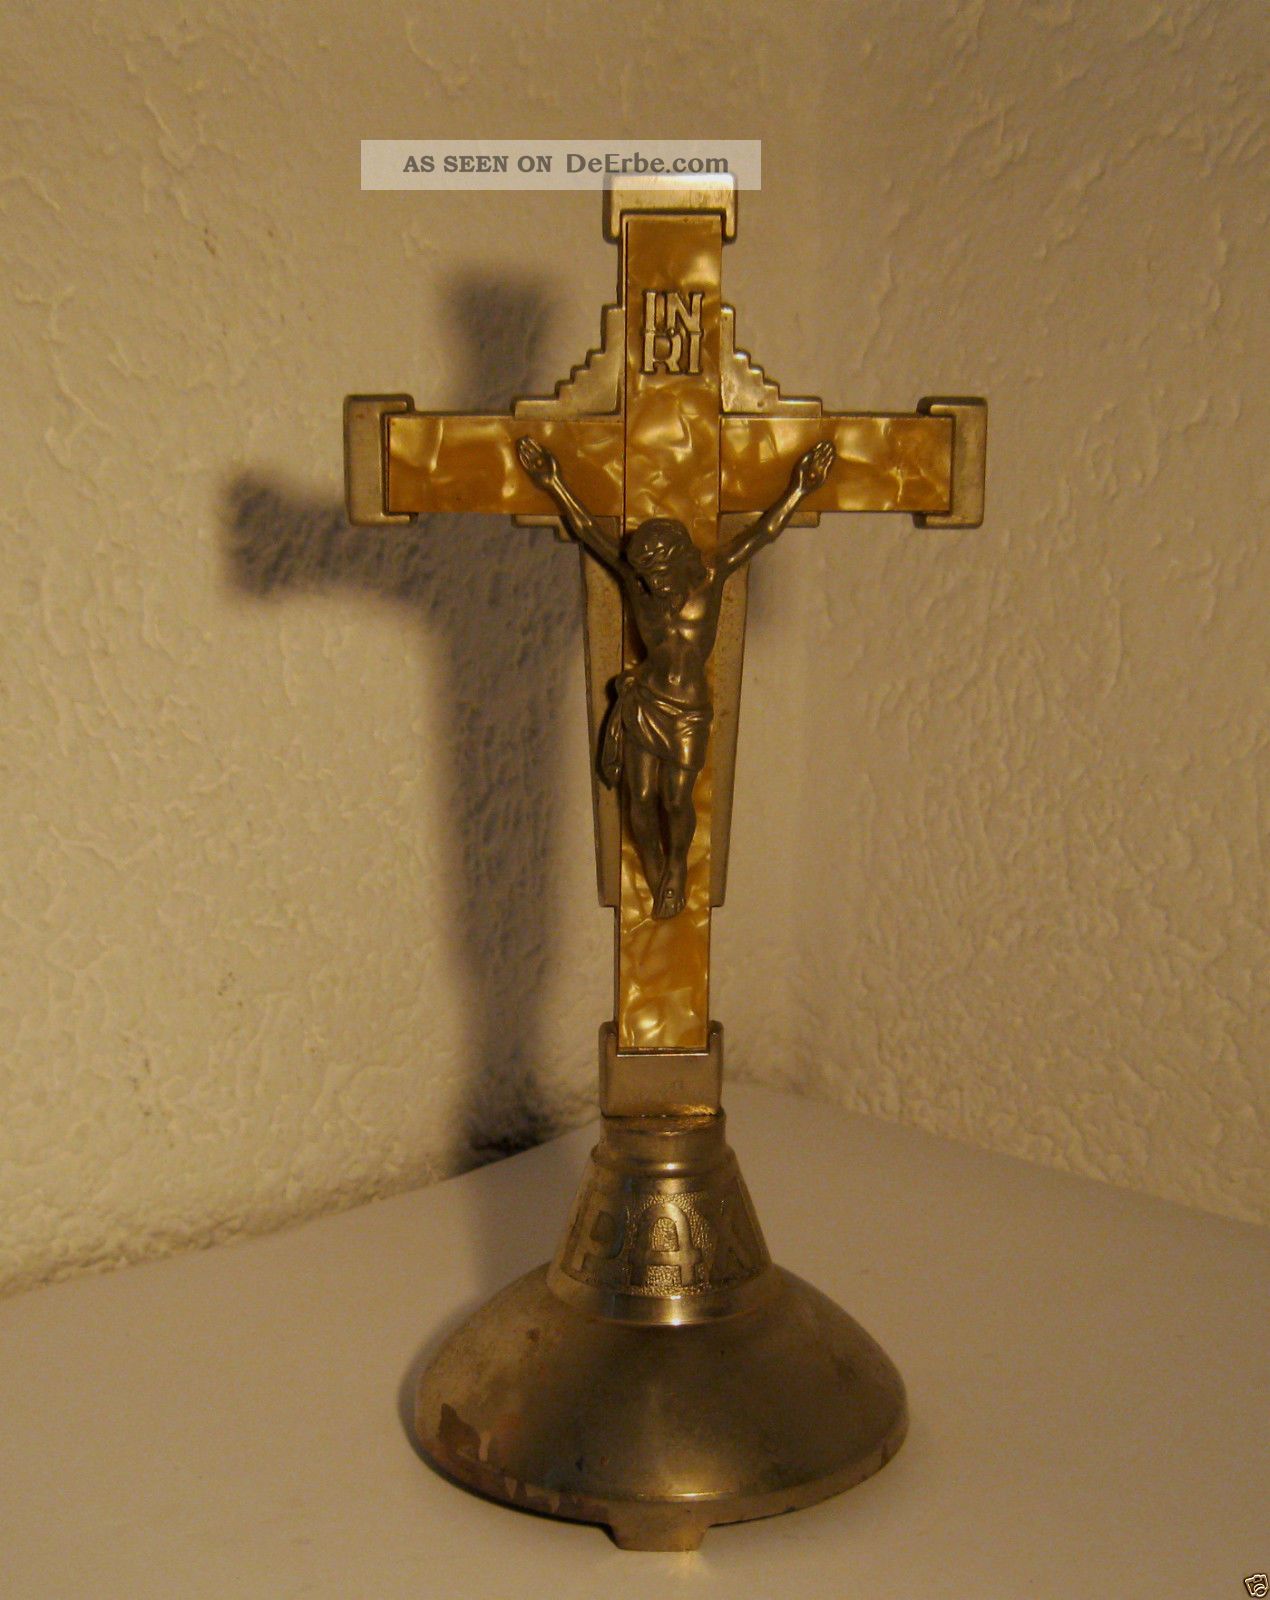 Altes Standkreuz Metall Altarkreuz / Kruzifix / Verseh - Kreuz Inri / Pax Foreign Skulpturen & Kruzifixe Bild